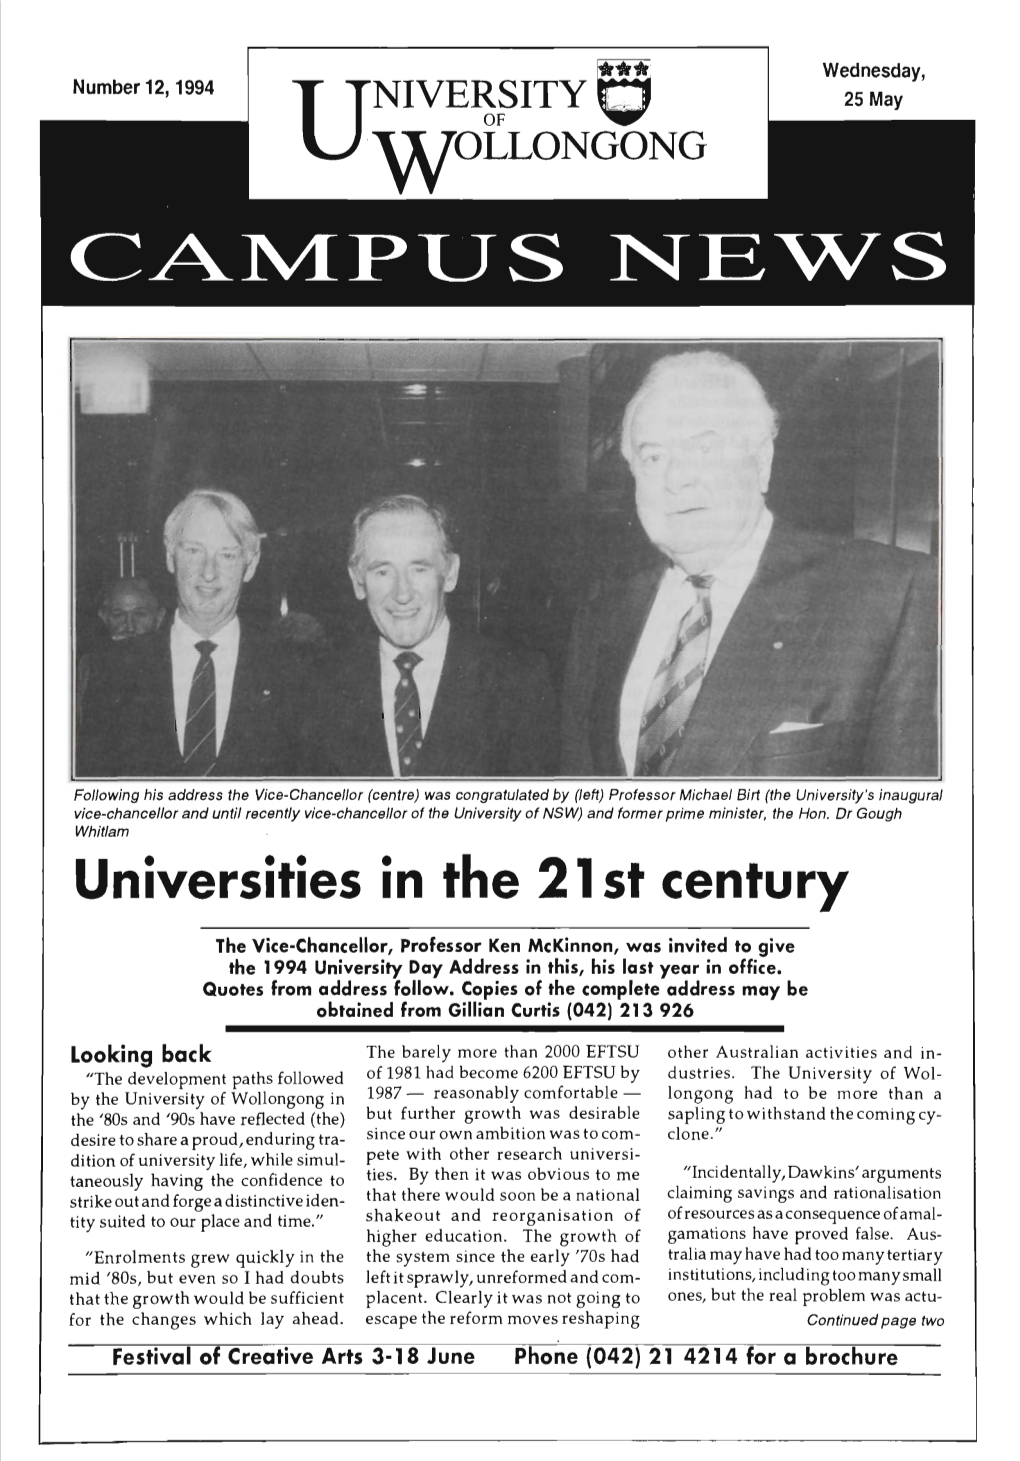 University of Wollongong Campus News 25 May 1994